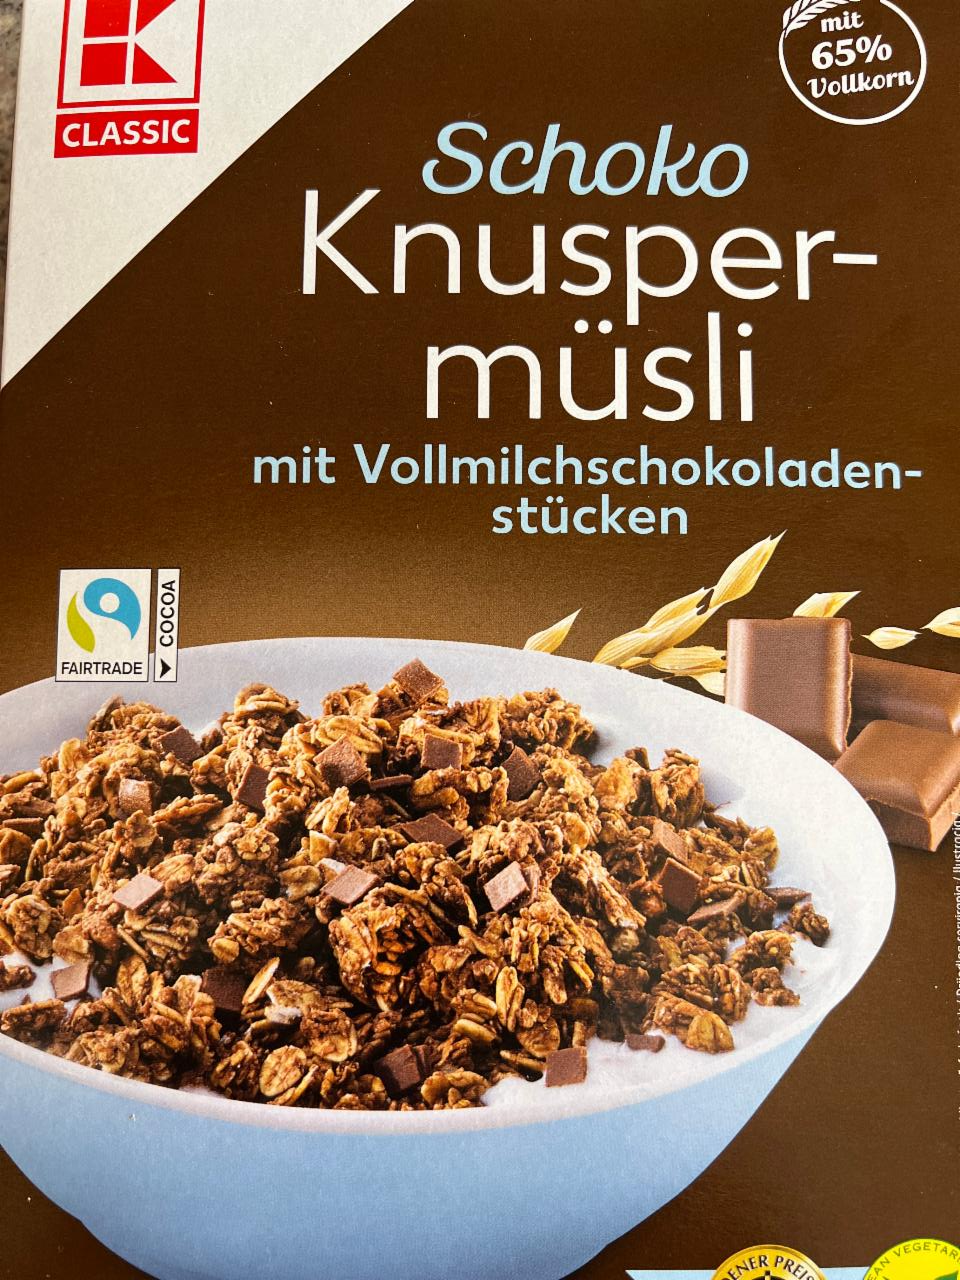 Fotografie - Schoko Knusper-müsli mit Vollmilchschokoladen-stücken K-Classic